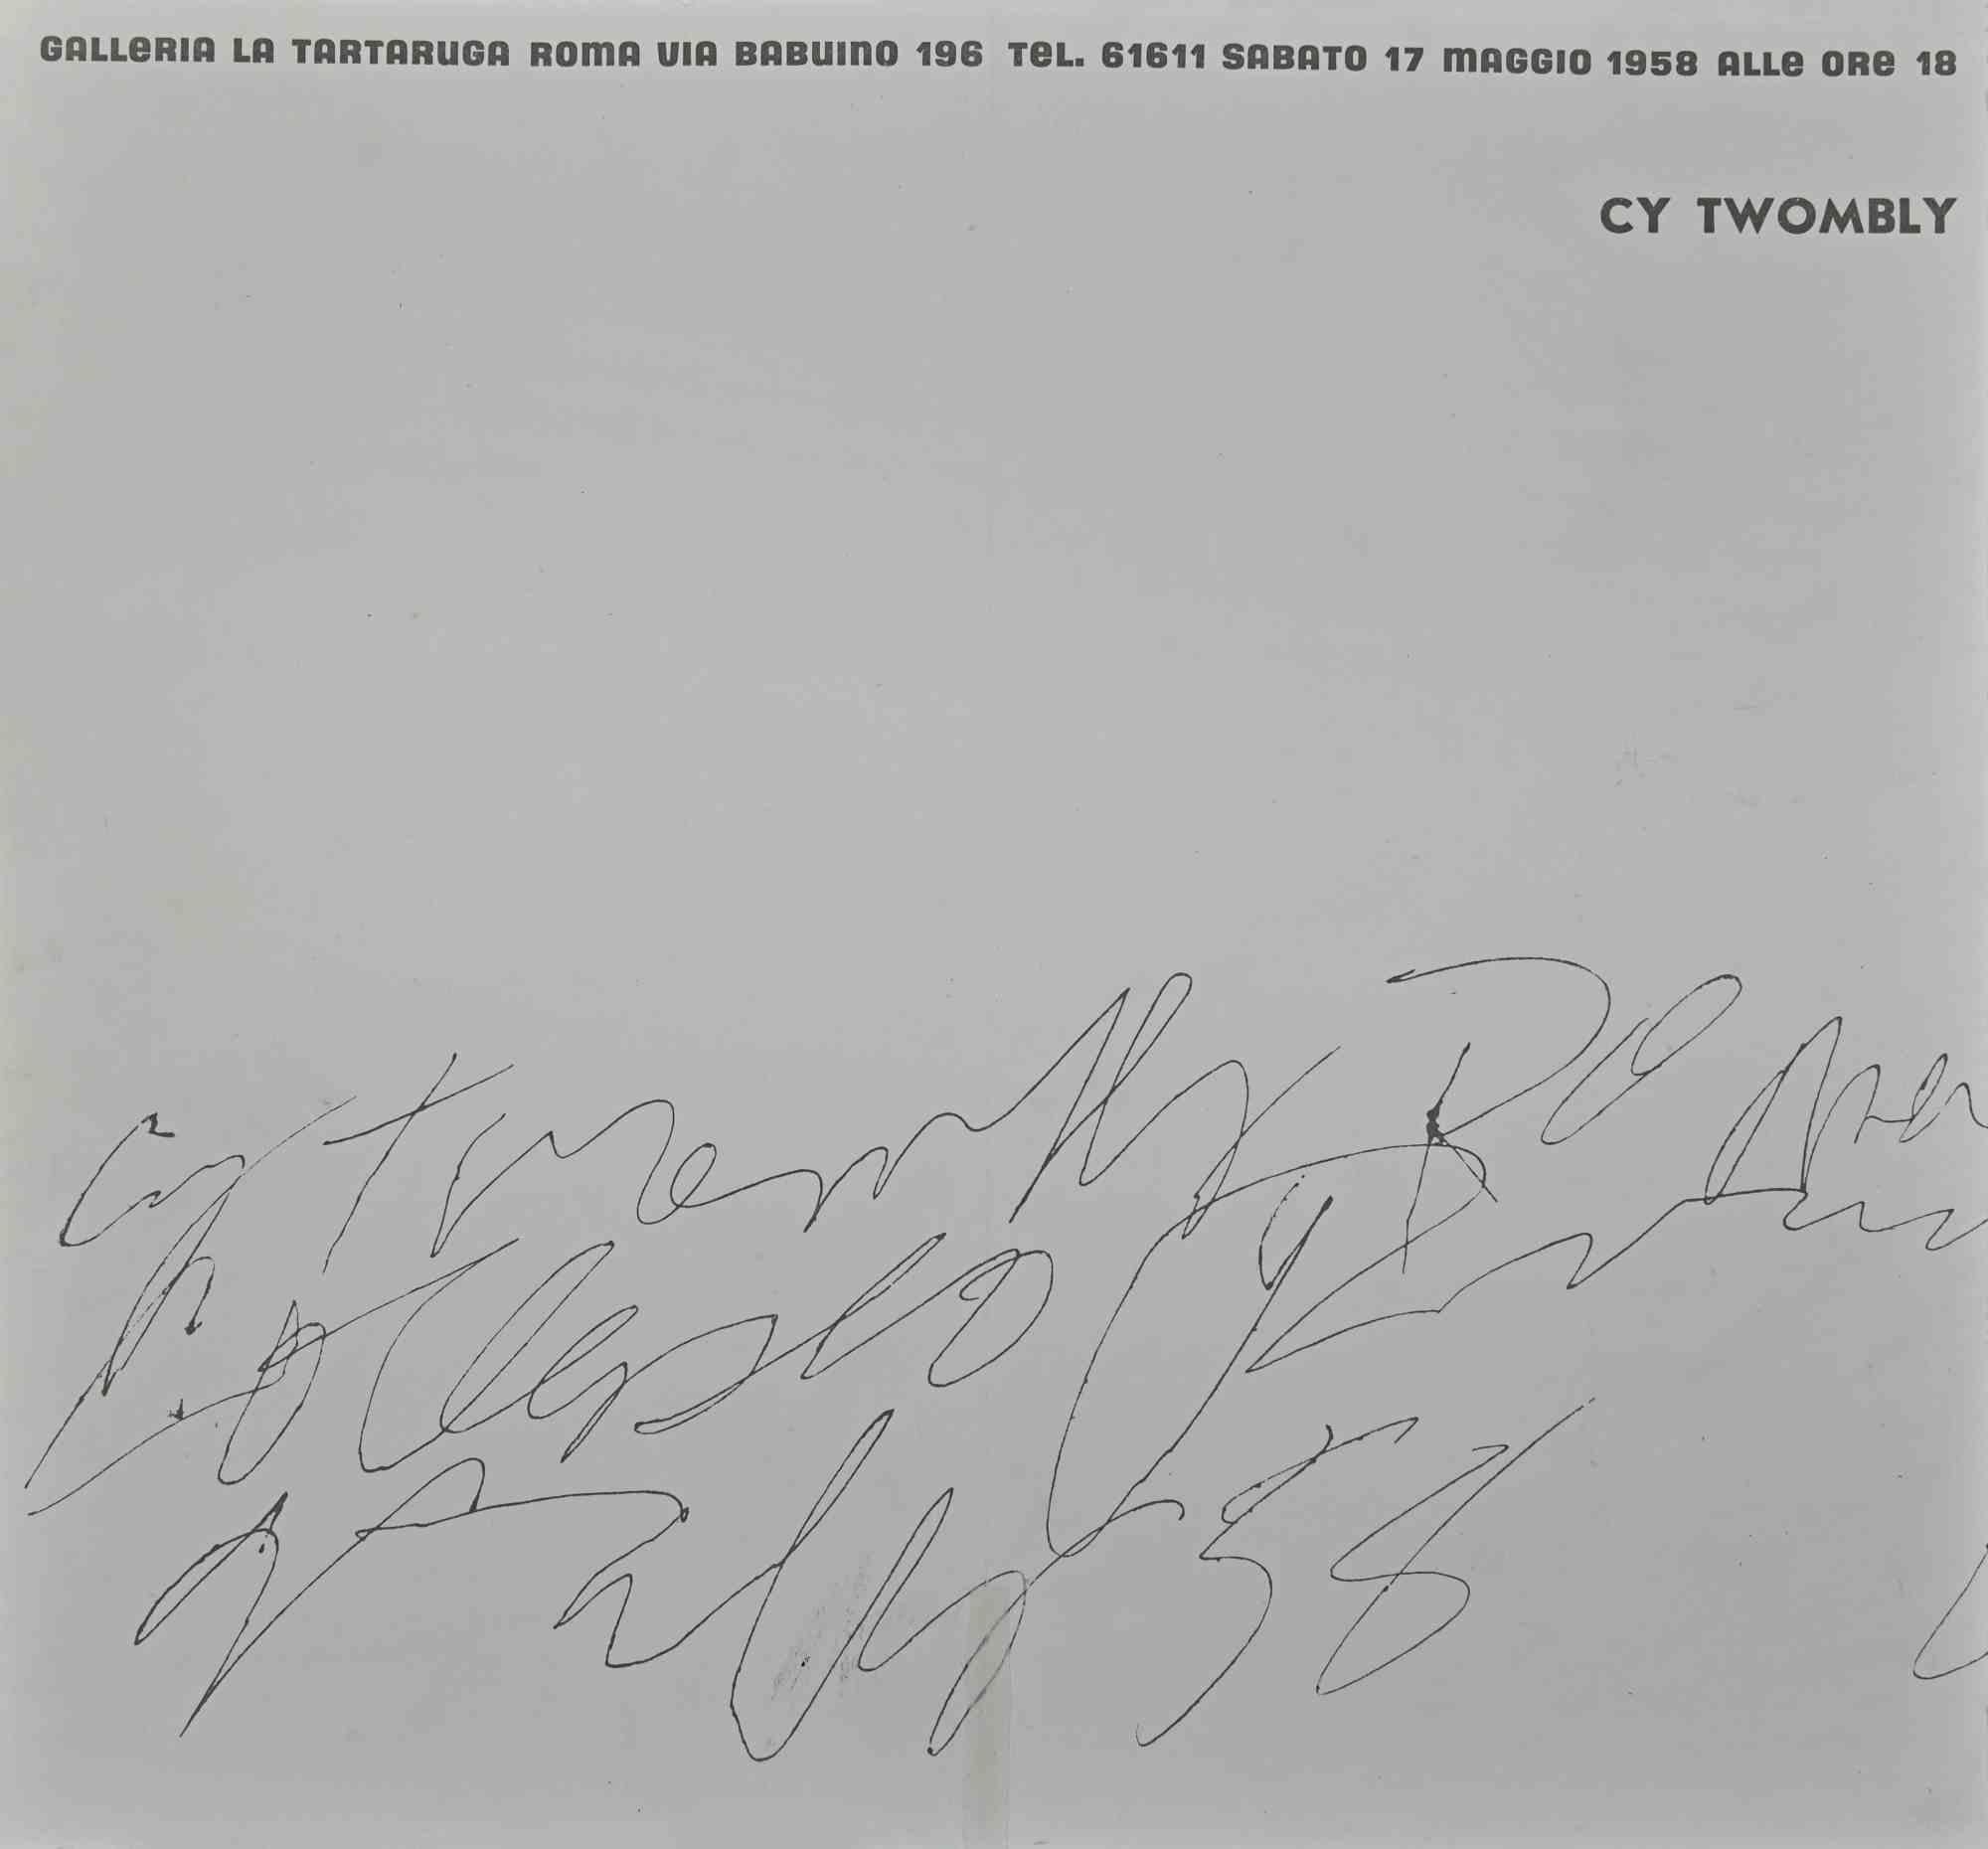 Cy Twombly Ausstellungsprospekt - Galleria La Tartaruga 1958  ist eine sehr seltene und wertvolle Ausstellungsbroschüre von Cy Twombly.

Elfenbeinfarbener Karton.

Einladung zur Ausstellung amerikanischer Künstler in der Galerie La Tartaruga in Rom